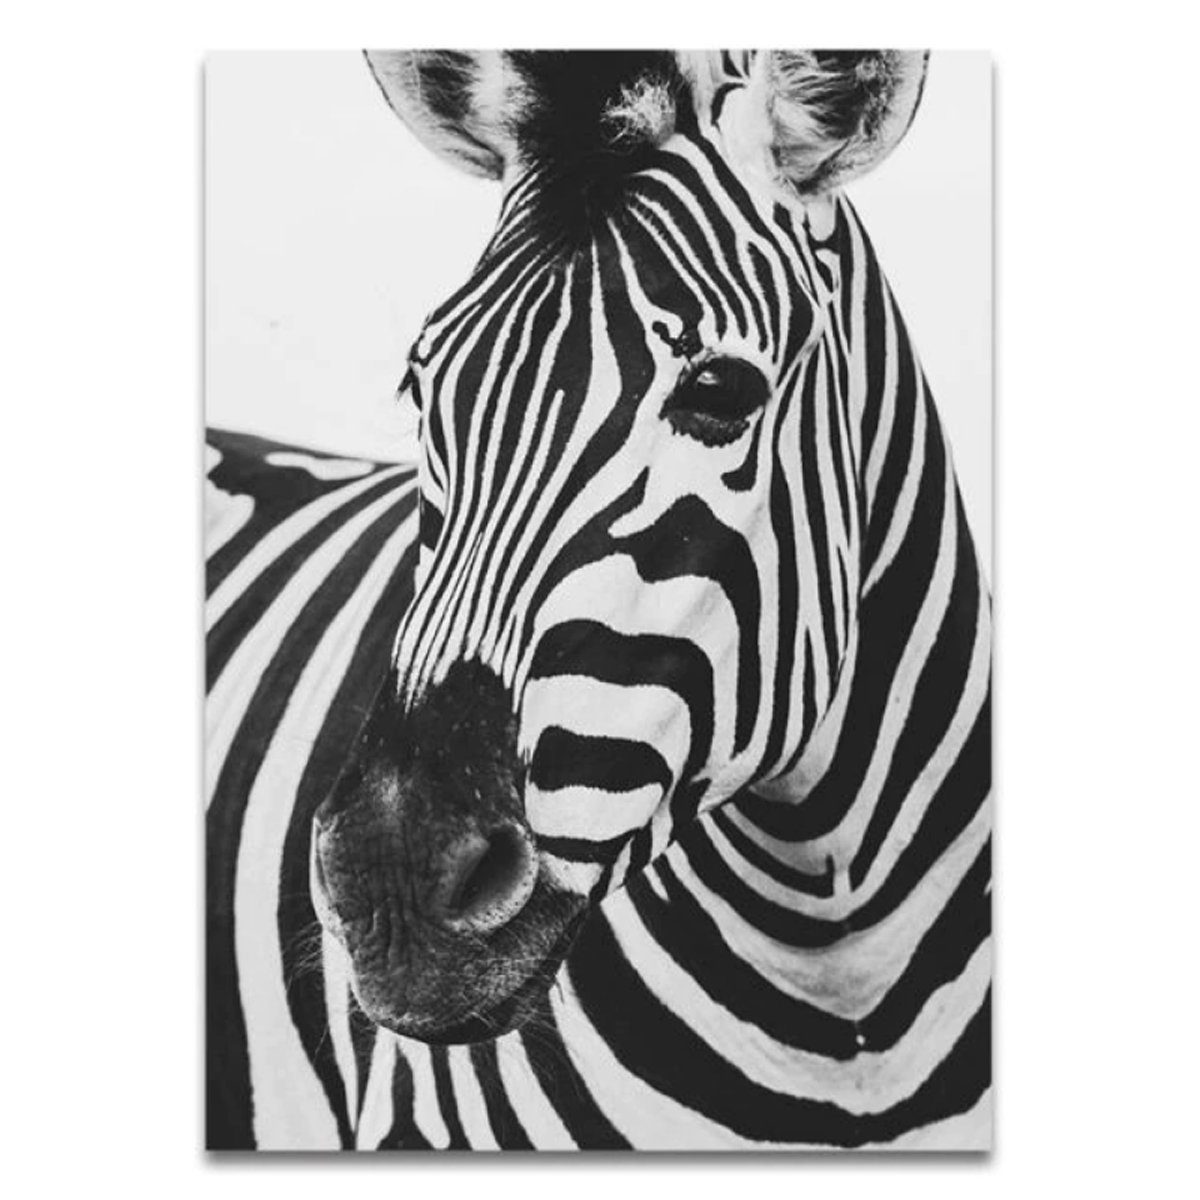 TPFLiving Kunstdruck (OHNE RAHMEN) Poster - Leinwand - Wandbild, Tierwelt Afrikas - Giraffe Elefant Zebra Nashorn Löwe Pferd - (12 Motive in 17 Größen zur Auswahl), Farben: Schwarz, Gold, Weiß - Größe: 13x18cm